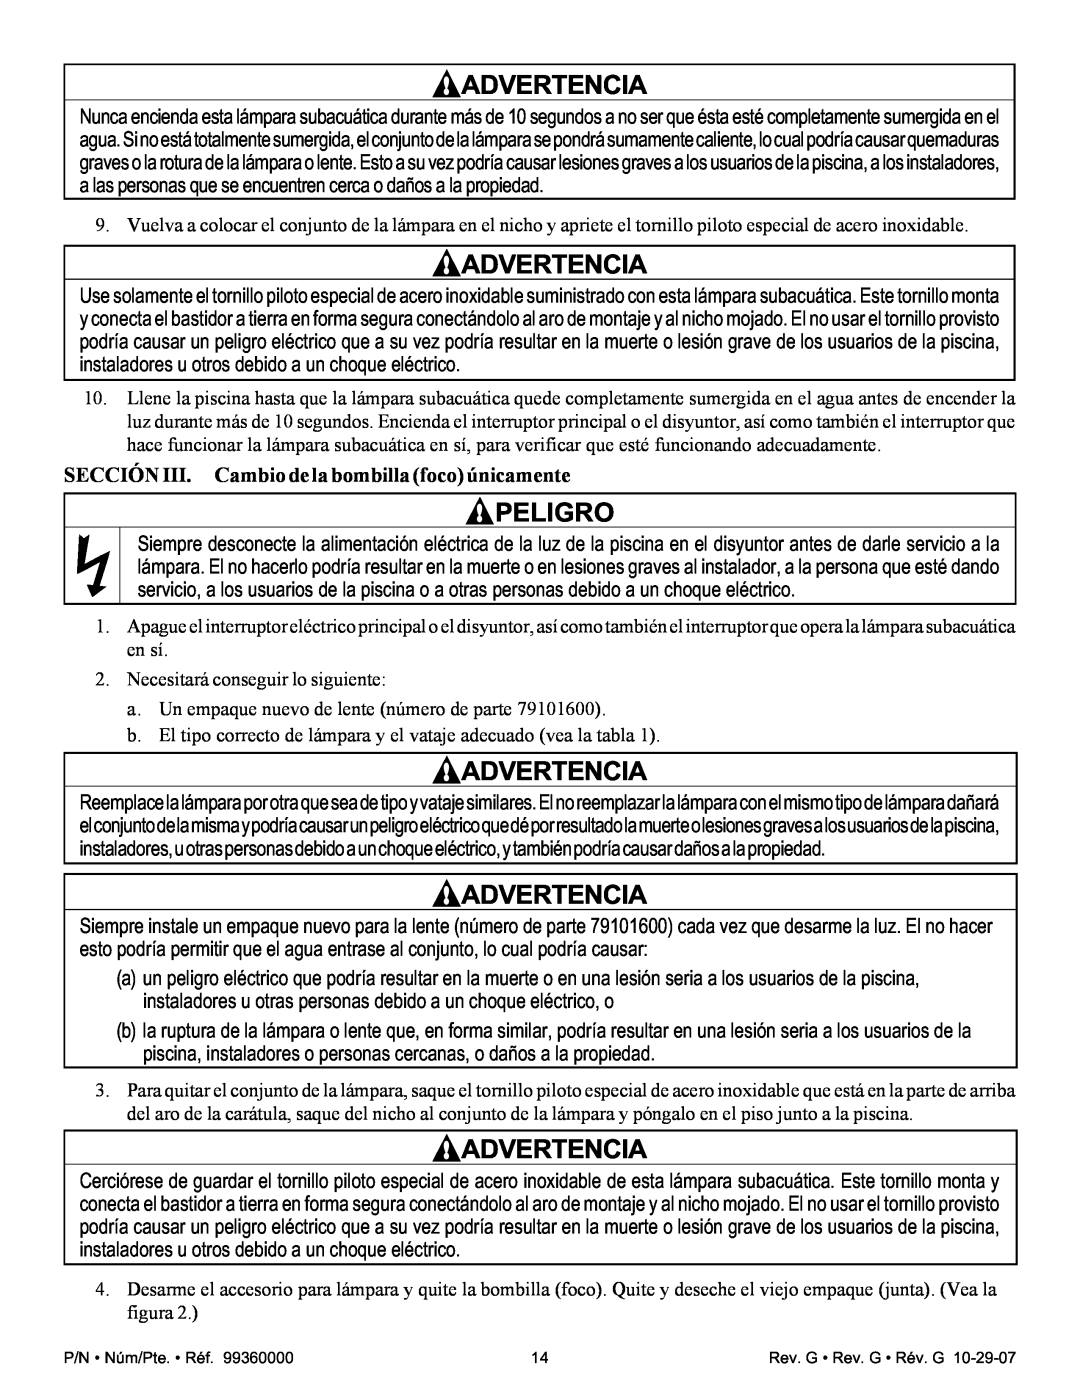 Pentair Amerlite important safety instructions SECCIÓN III. Cambio de la bombilla foco únicamente, Advertencia, Peligro 